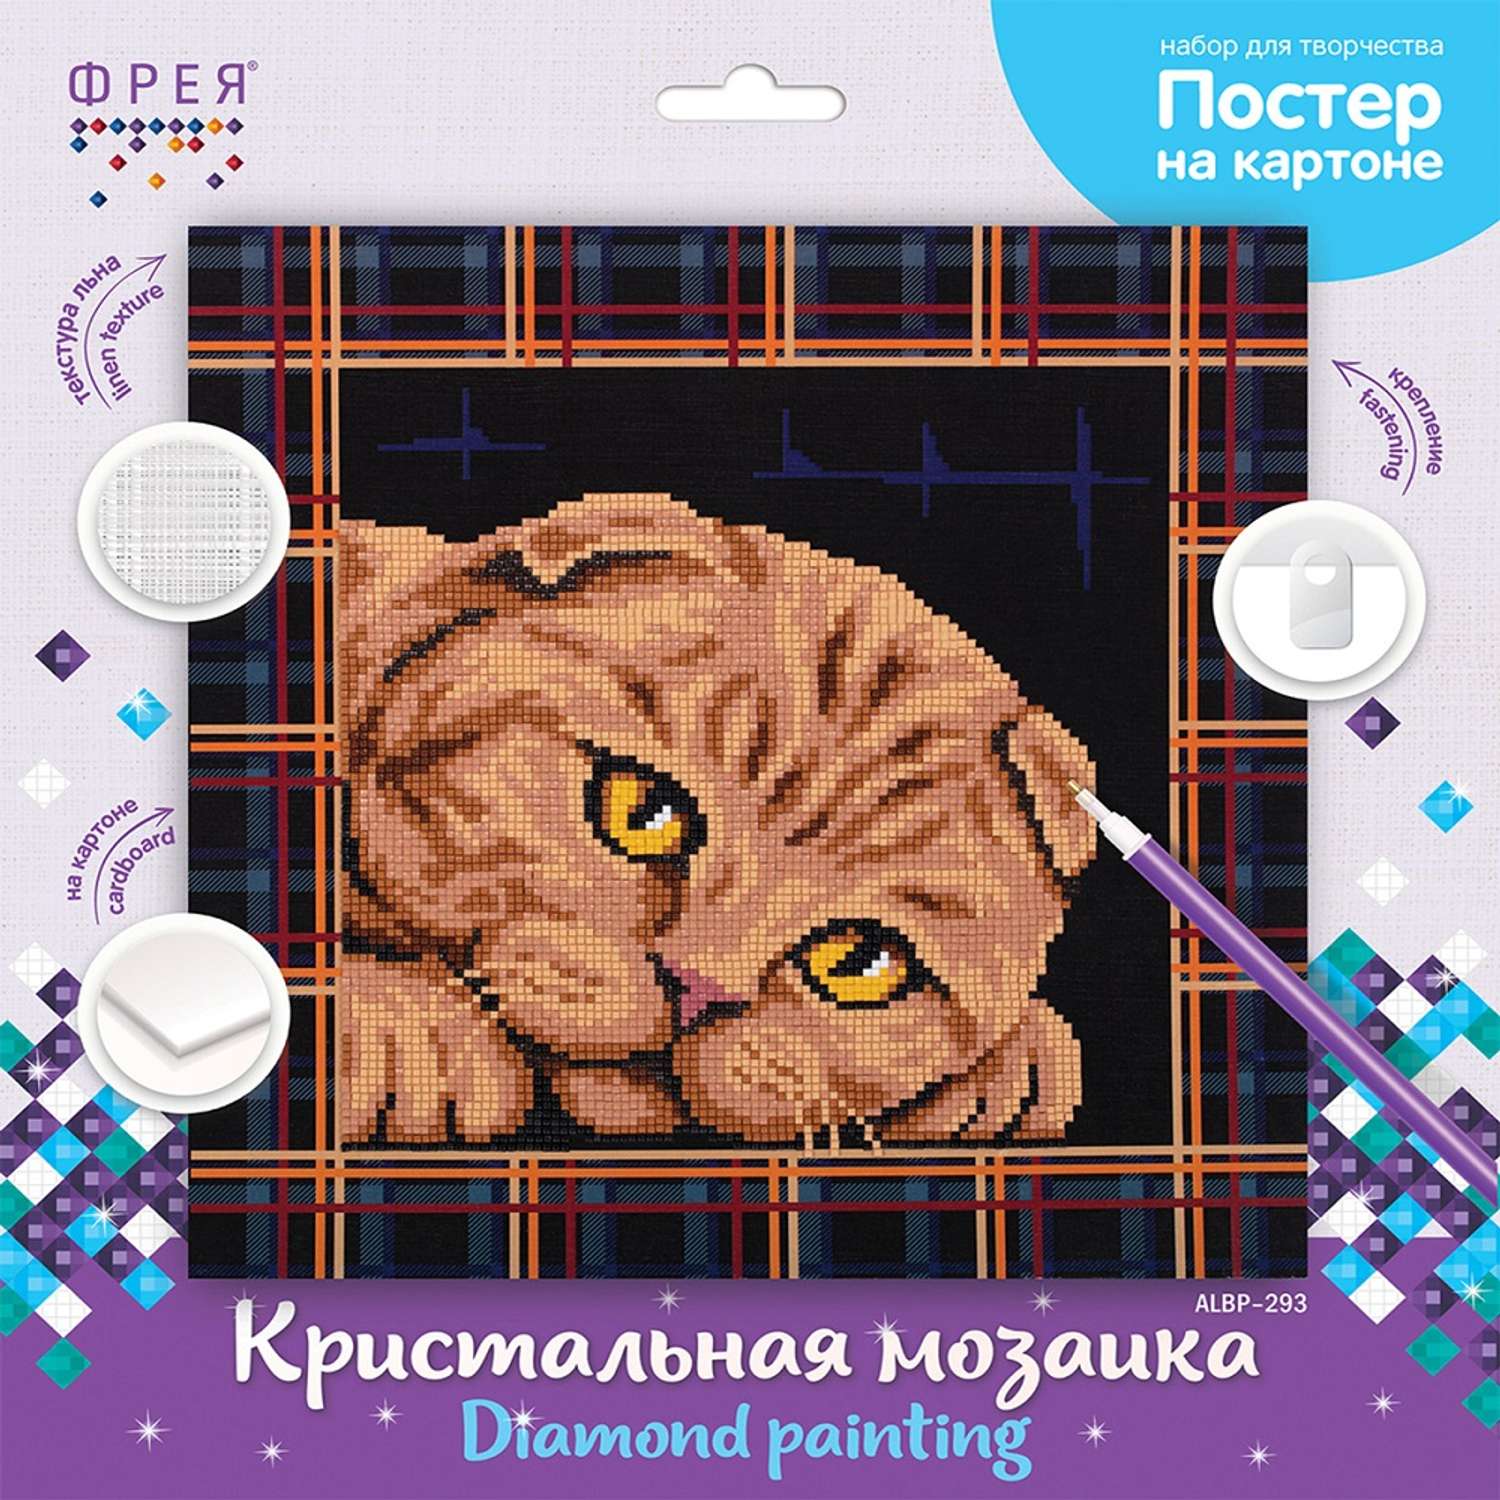 Кристальная мозаика Фрея ALBP-293 постер Шотландская кошка 30 х 30 см - фото 2